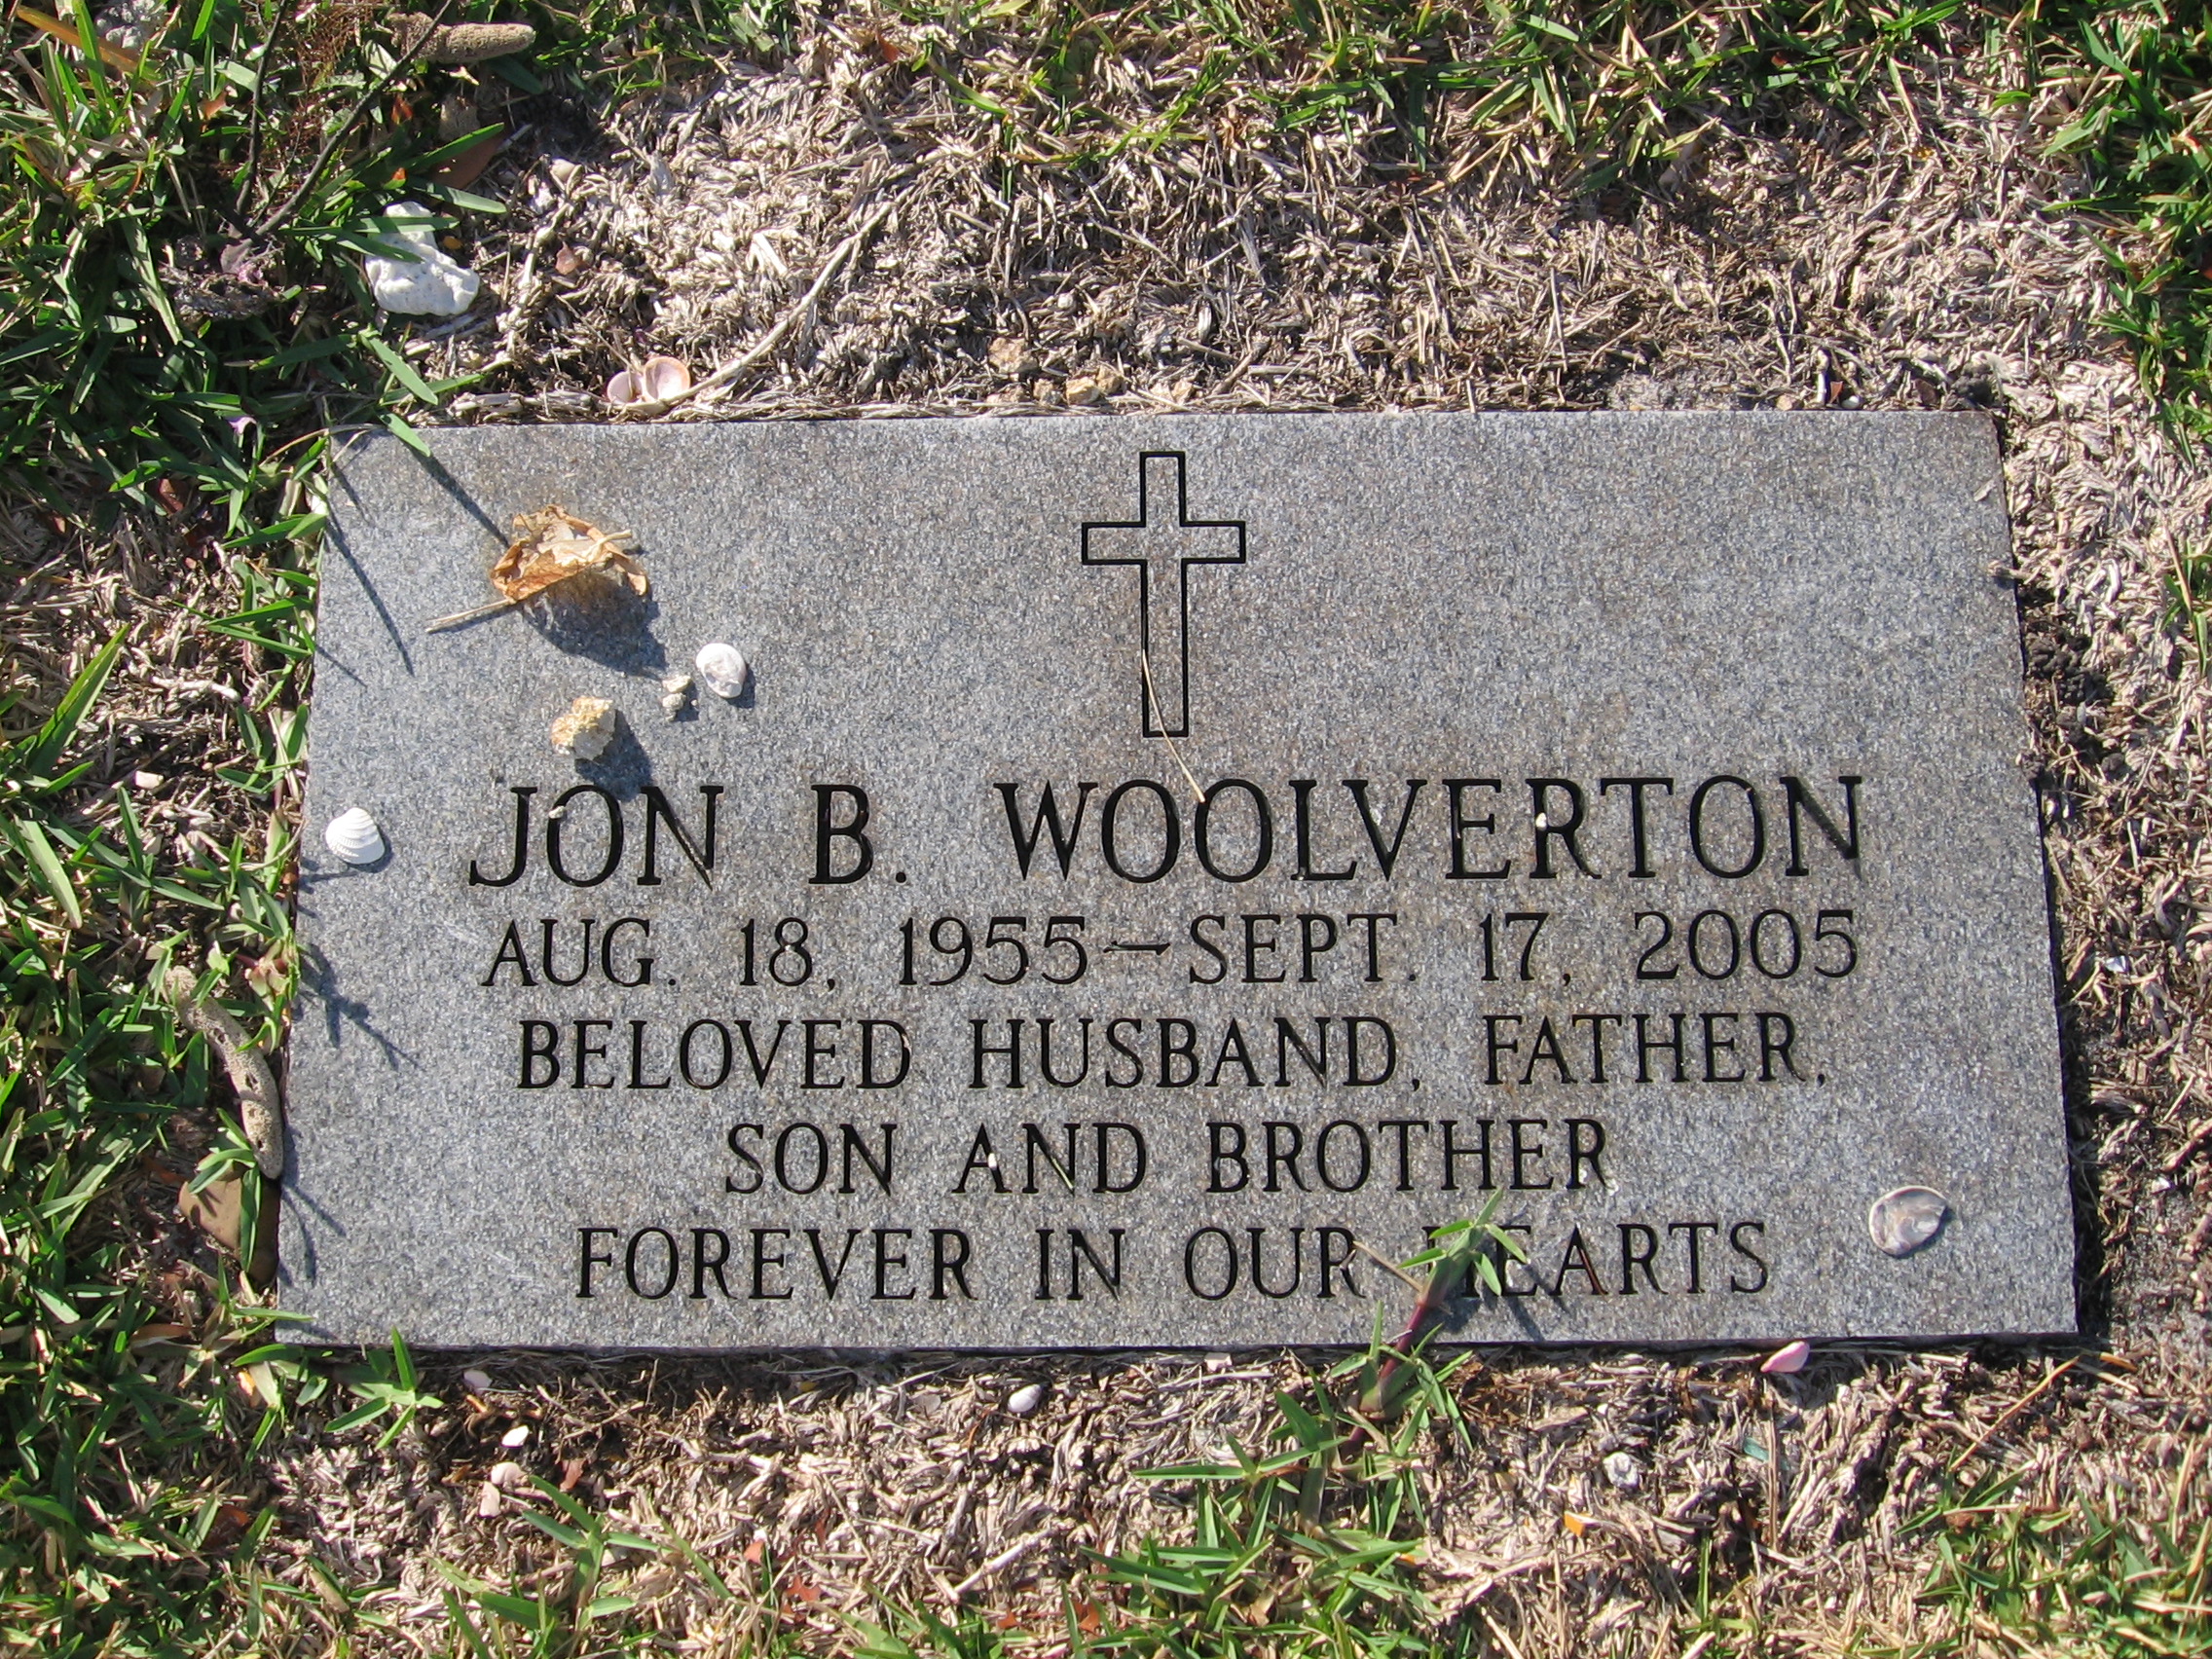 Jon B Woolverton